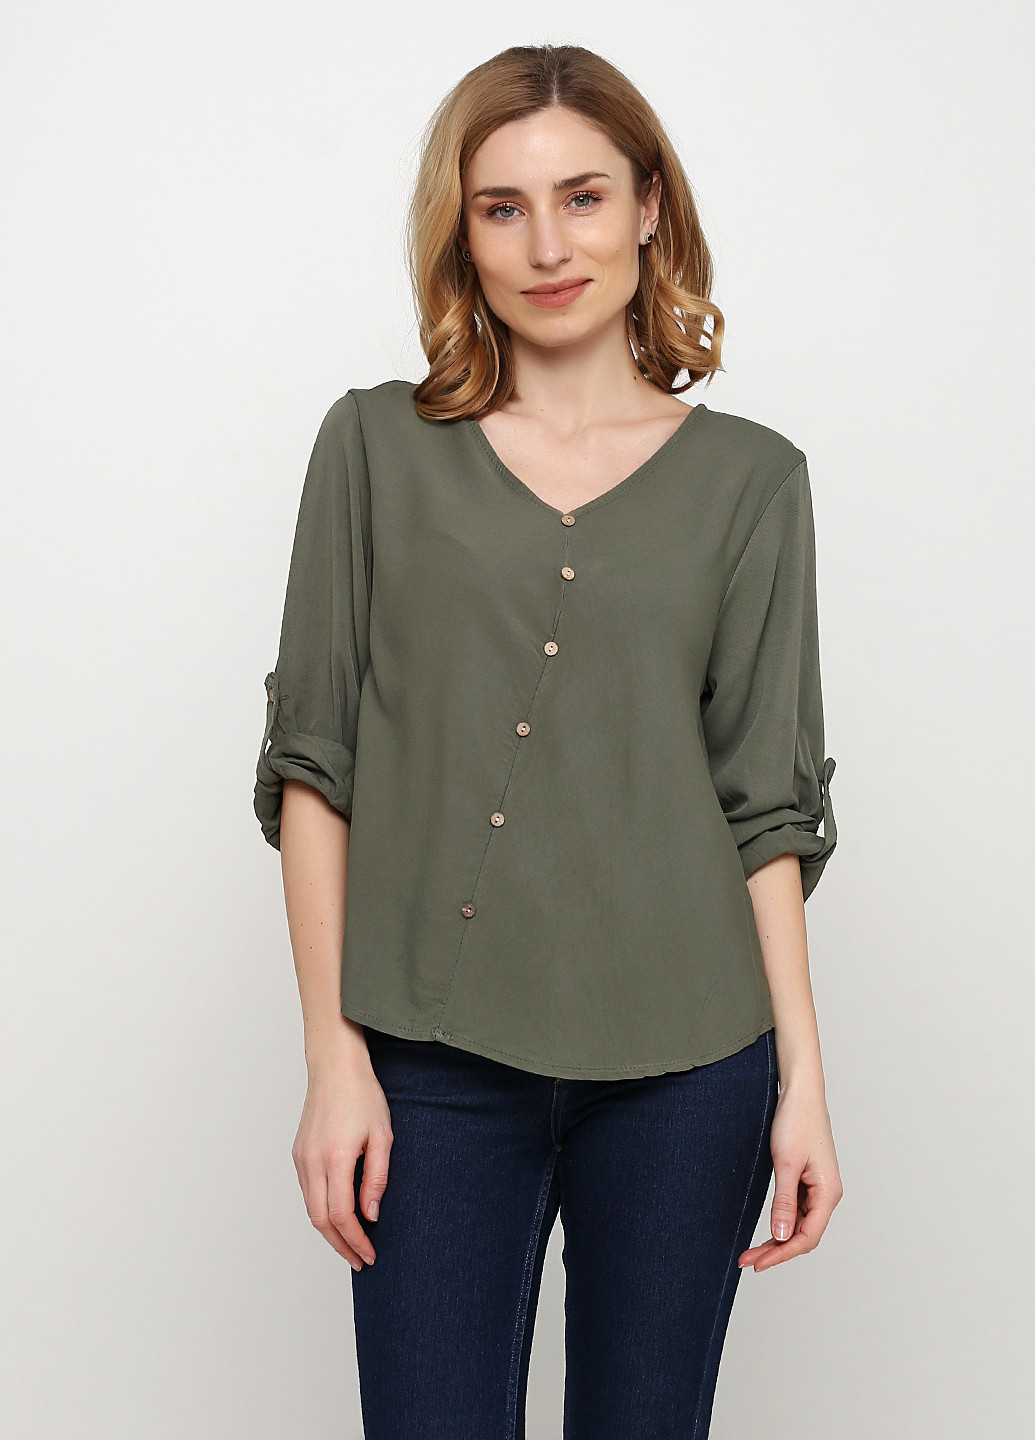 Серо-зеленая демисезонная блуза Made in Italy